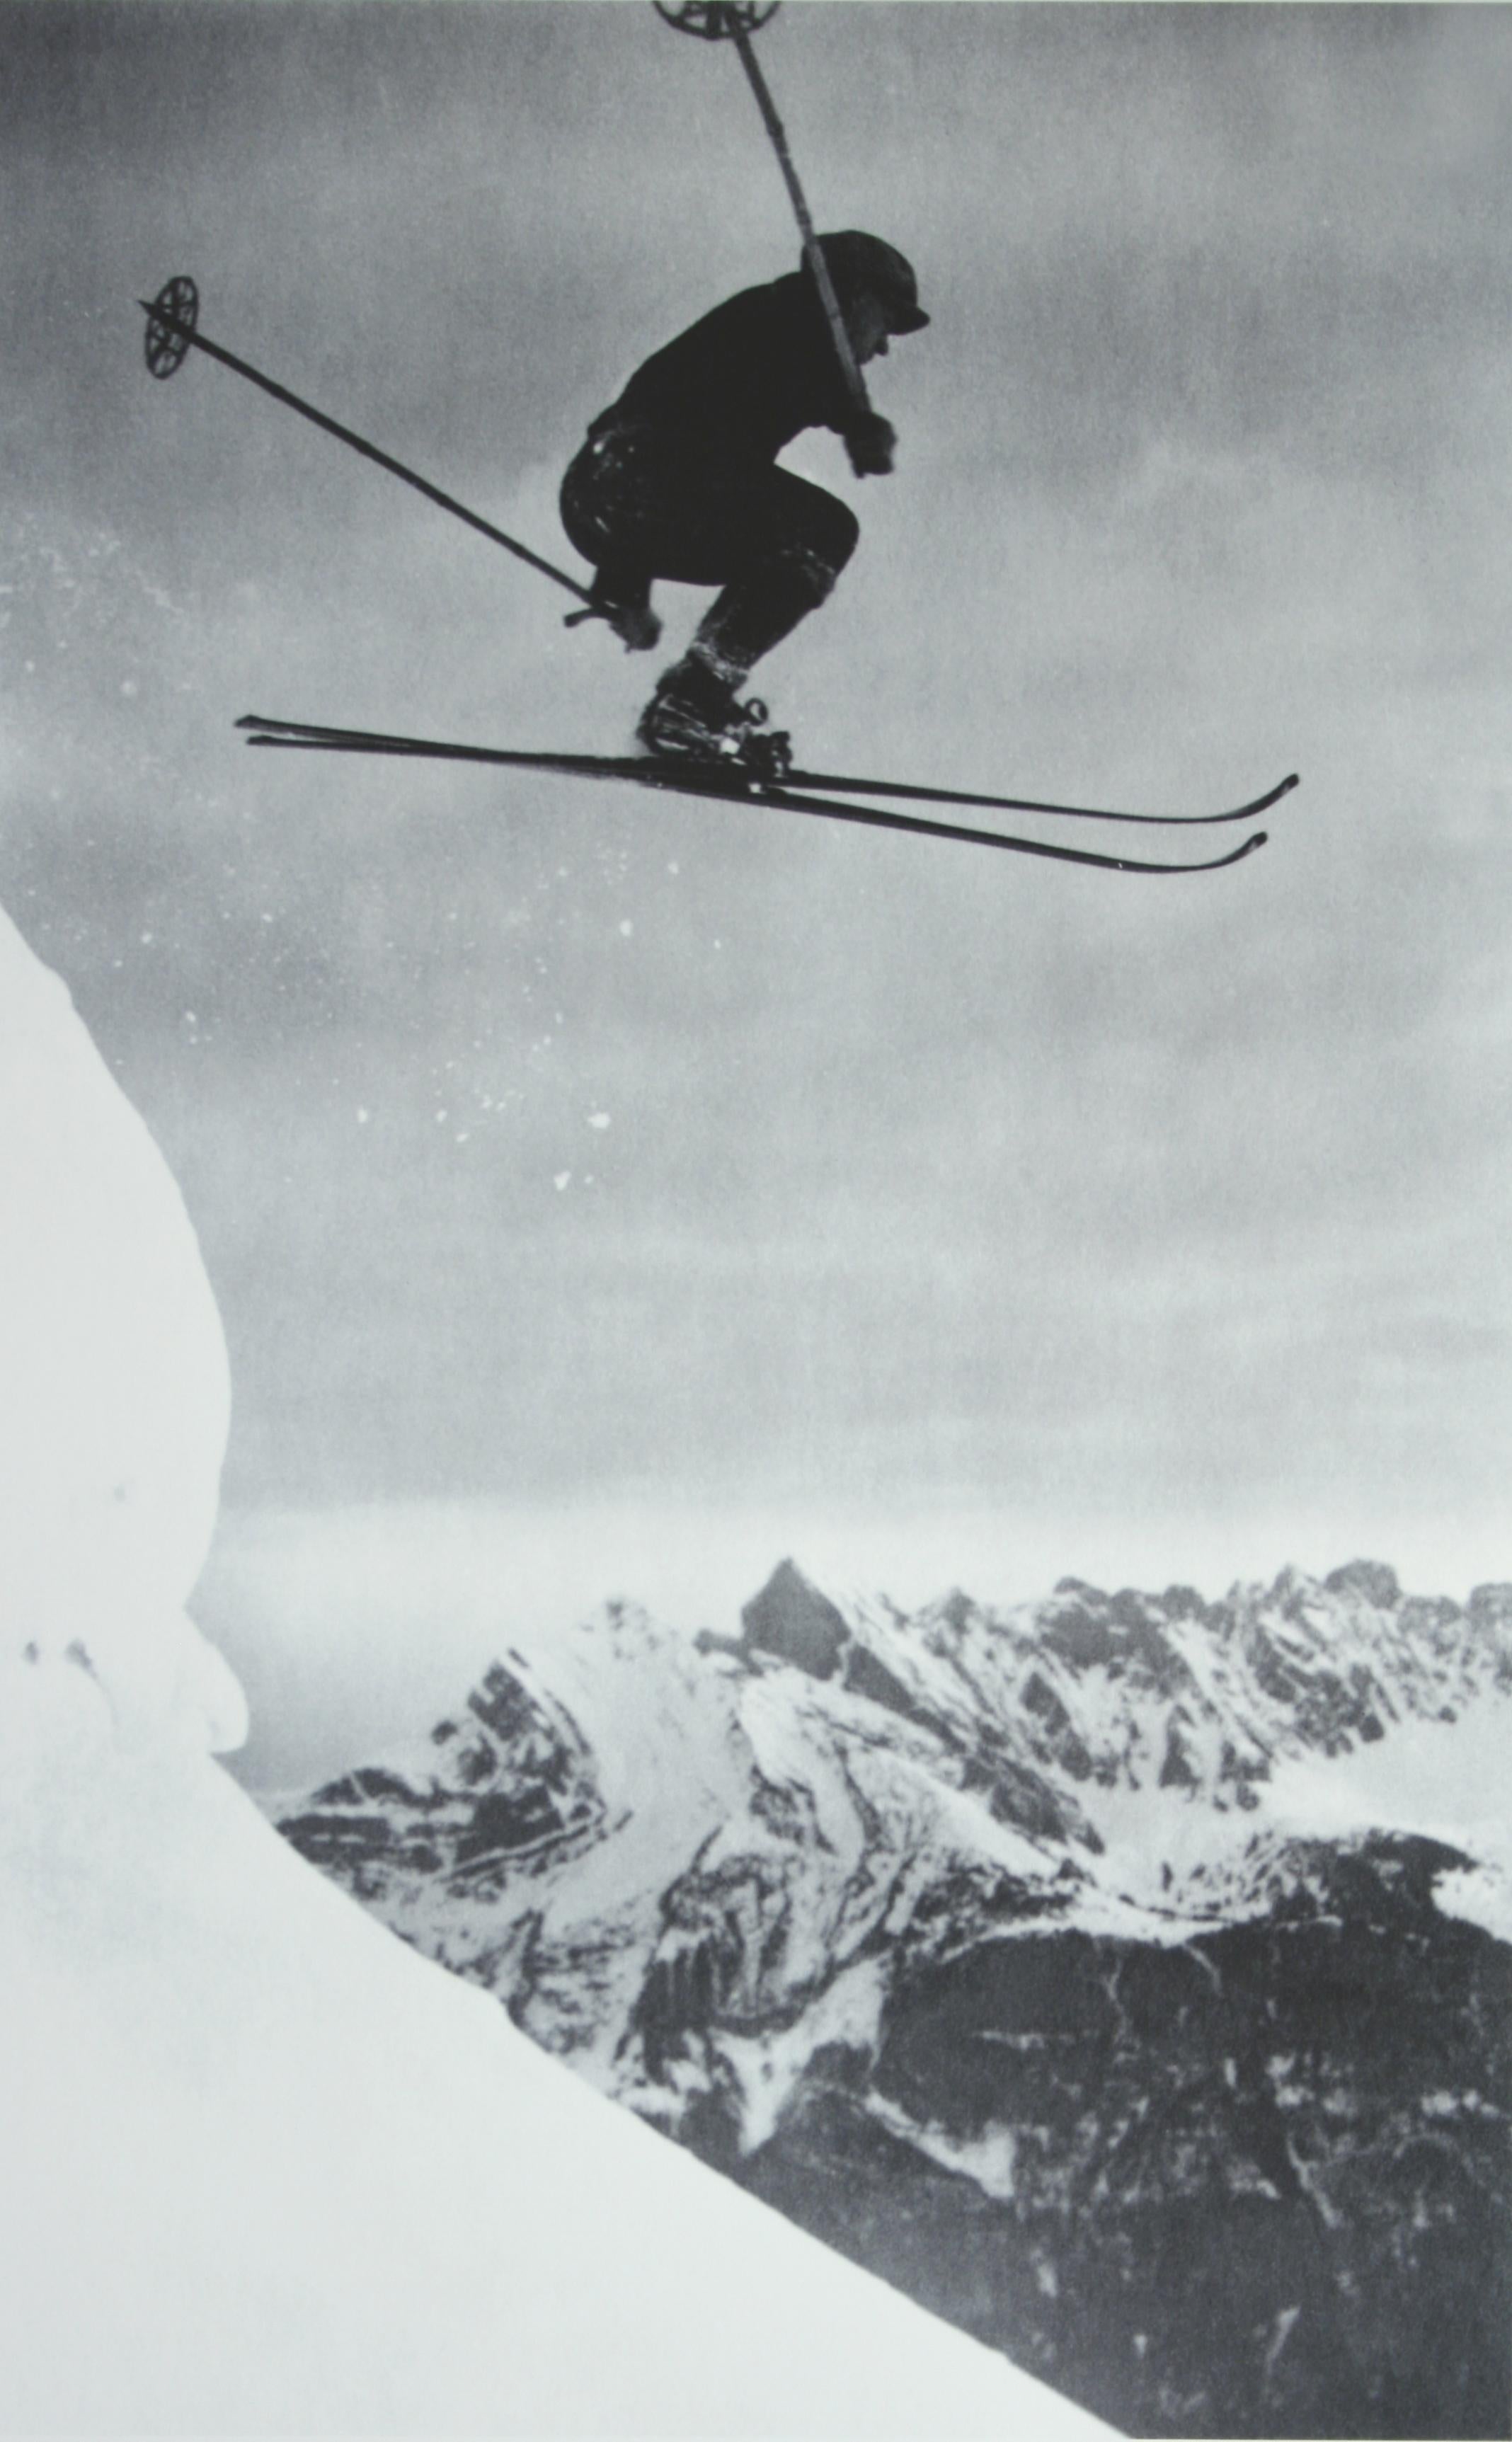 Skifotografie.
der Sprung'', eine neu aufgezogene Schwarz-Weiß-Fotografie nach einem Original-Skifoto aus den 1930er Jahren. Schwarz-Weiß-Fotos aus den Alpen sind die perfekte Ergänzung für jedes Haus oder jede Skihütte. Bevor das Skifahren zu